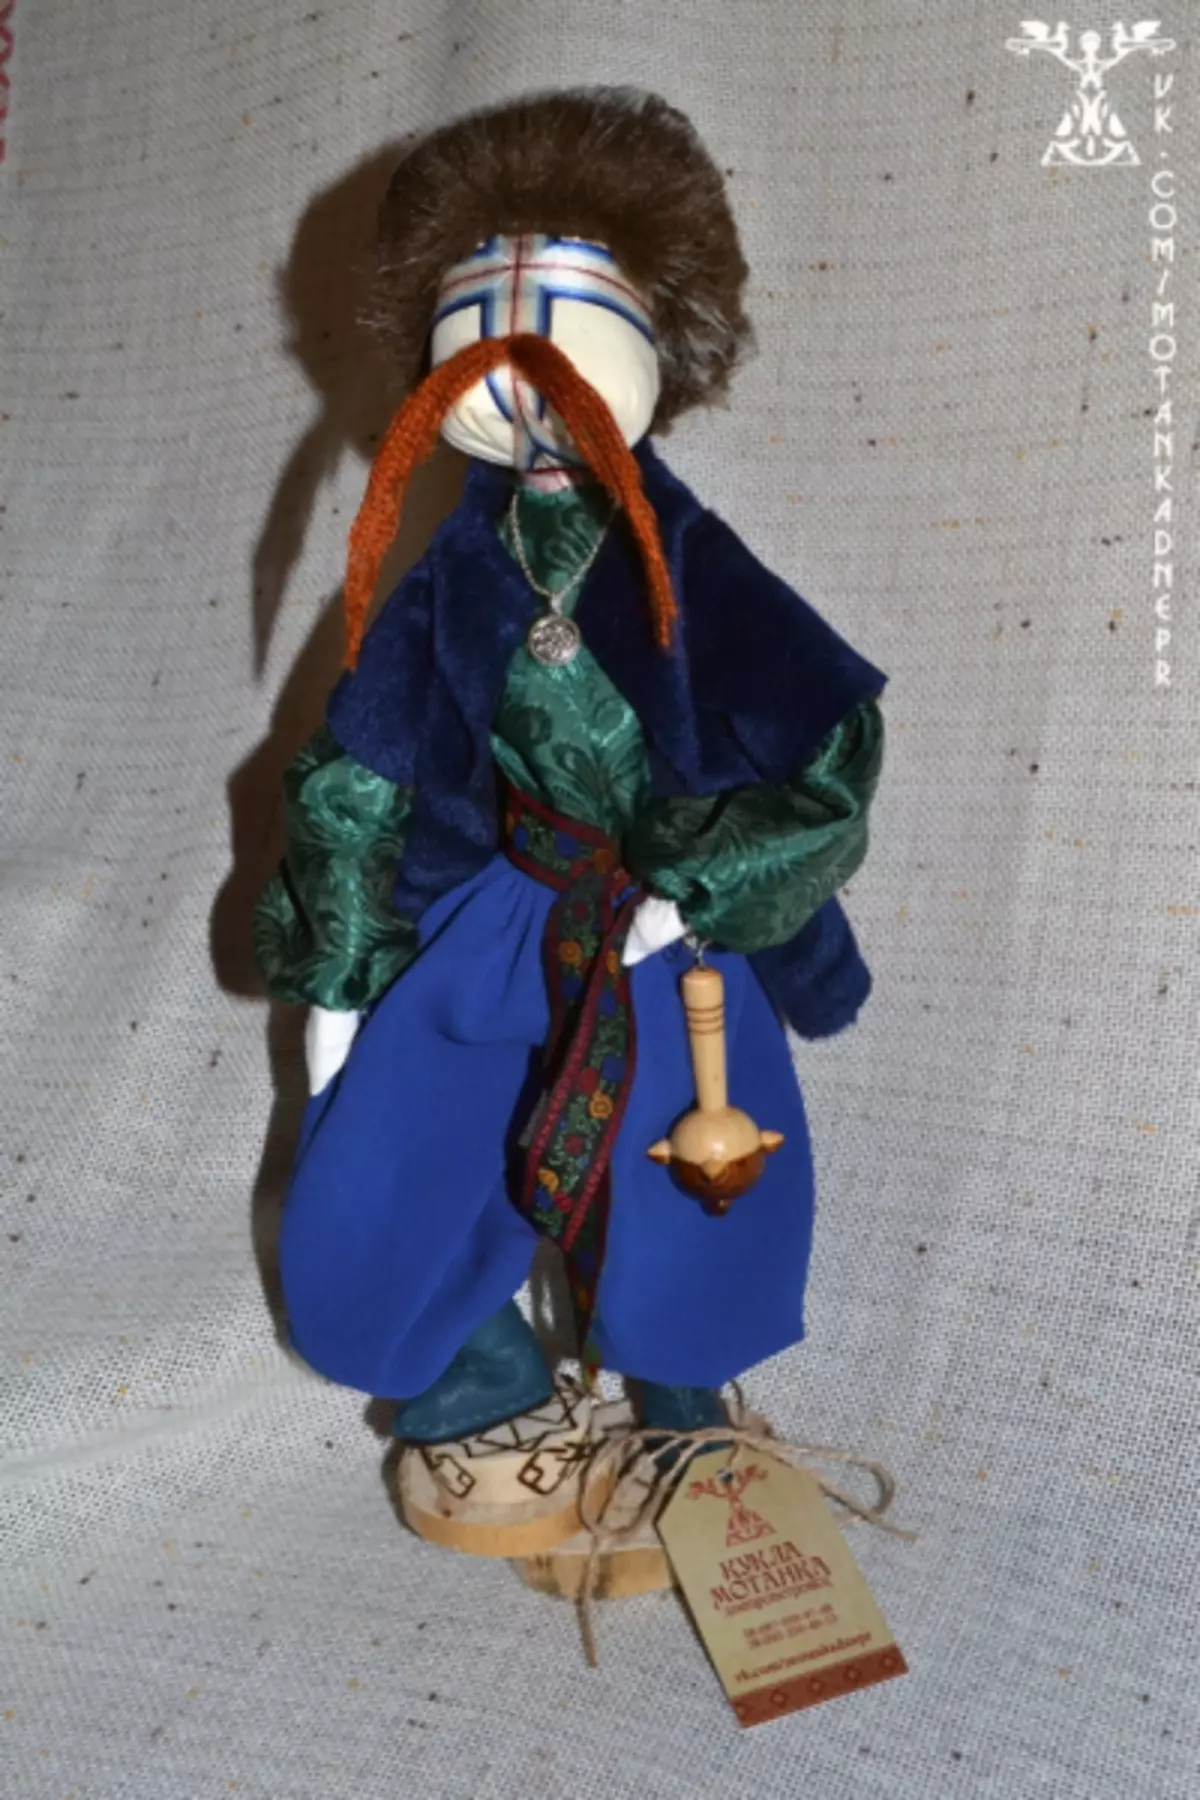 Yadda Ake Yin Doll - Motanka daga Yarn kuma daga masana'anta tare da hotuna da bidiyo